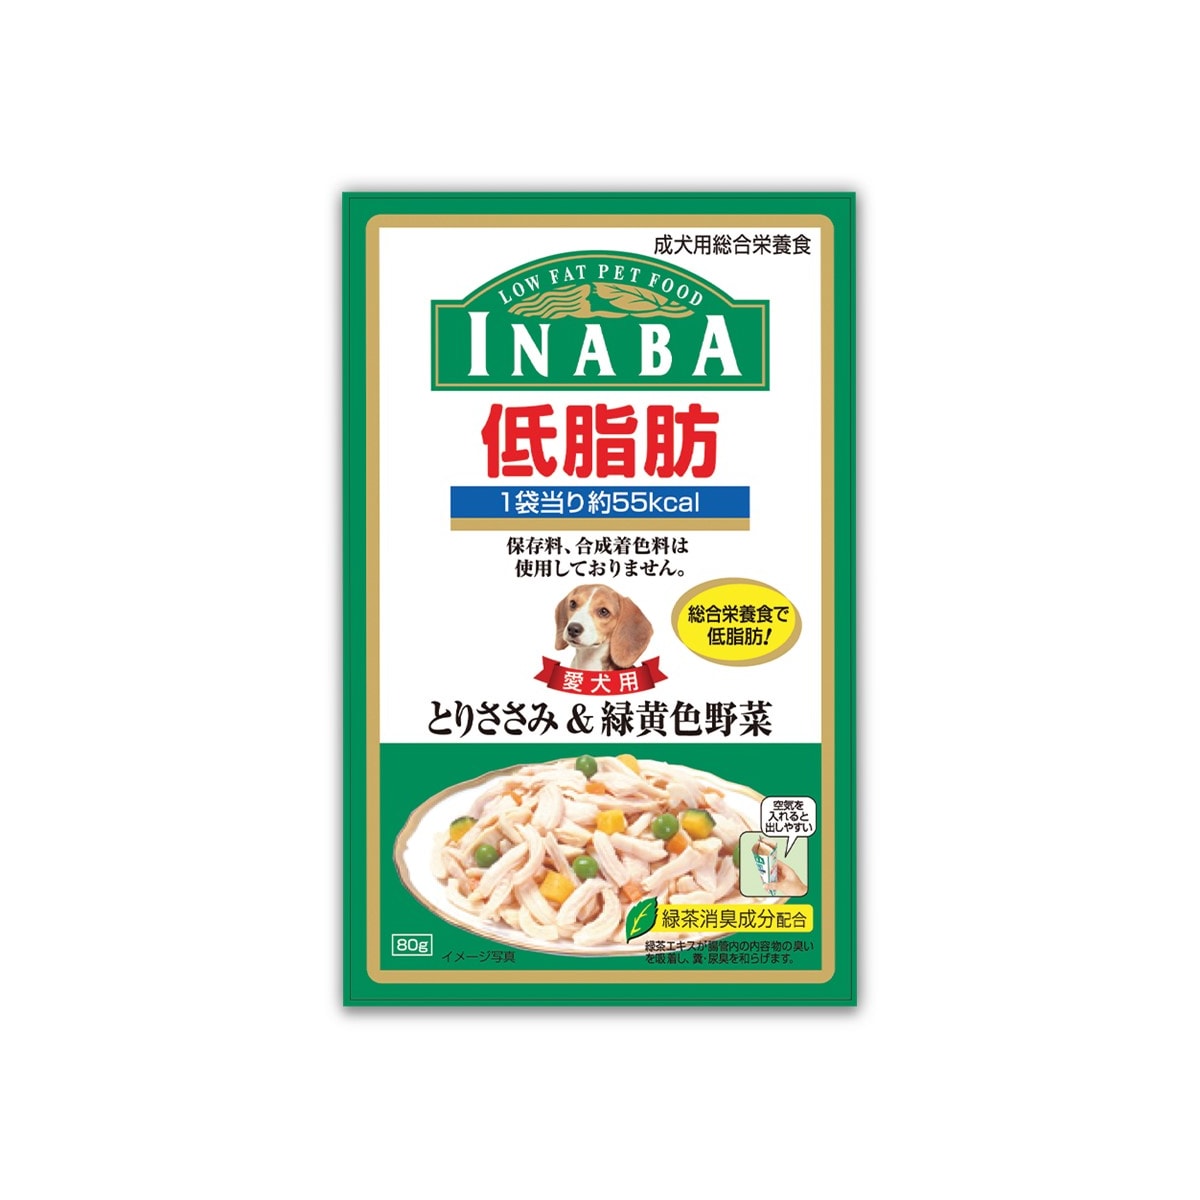 Inaba อินาบะ อาหารสุนัขแบบเปียกเพ้าซ์ สูตรไขมันต่ำ สันในไก่และผักในเยลลี่ สำหรับสุนัขโตทุกสายพันธุ์ 80 g